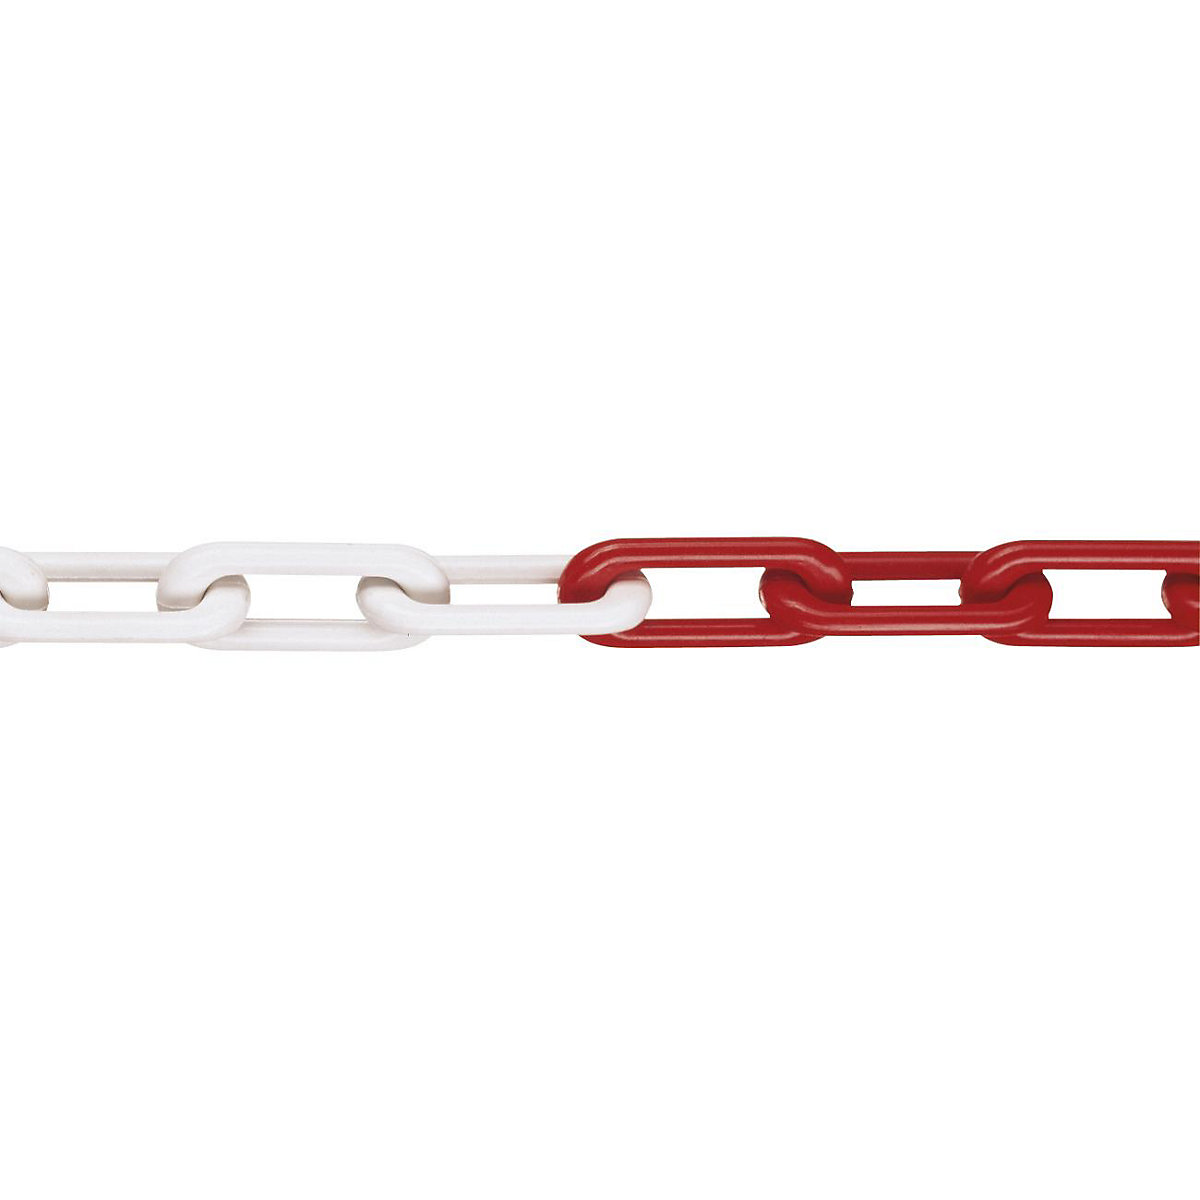 Łańcuch z nylonu, jakość MNK 8, dł. wiązki 25 m, czerwono-biały-4